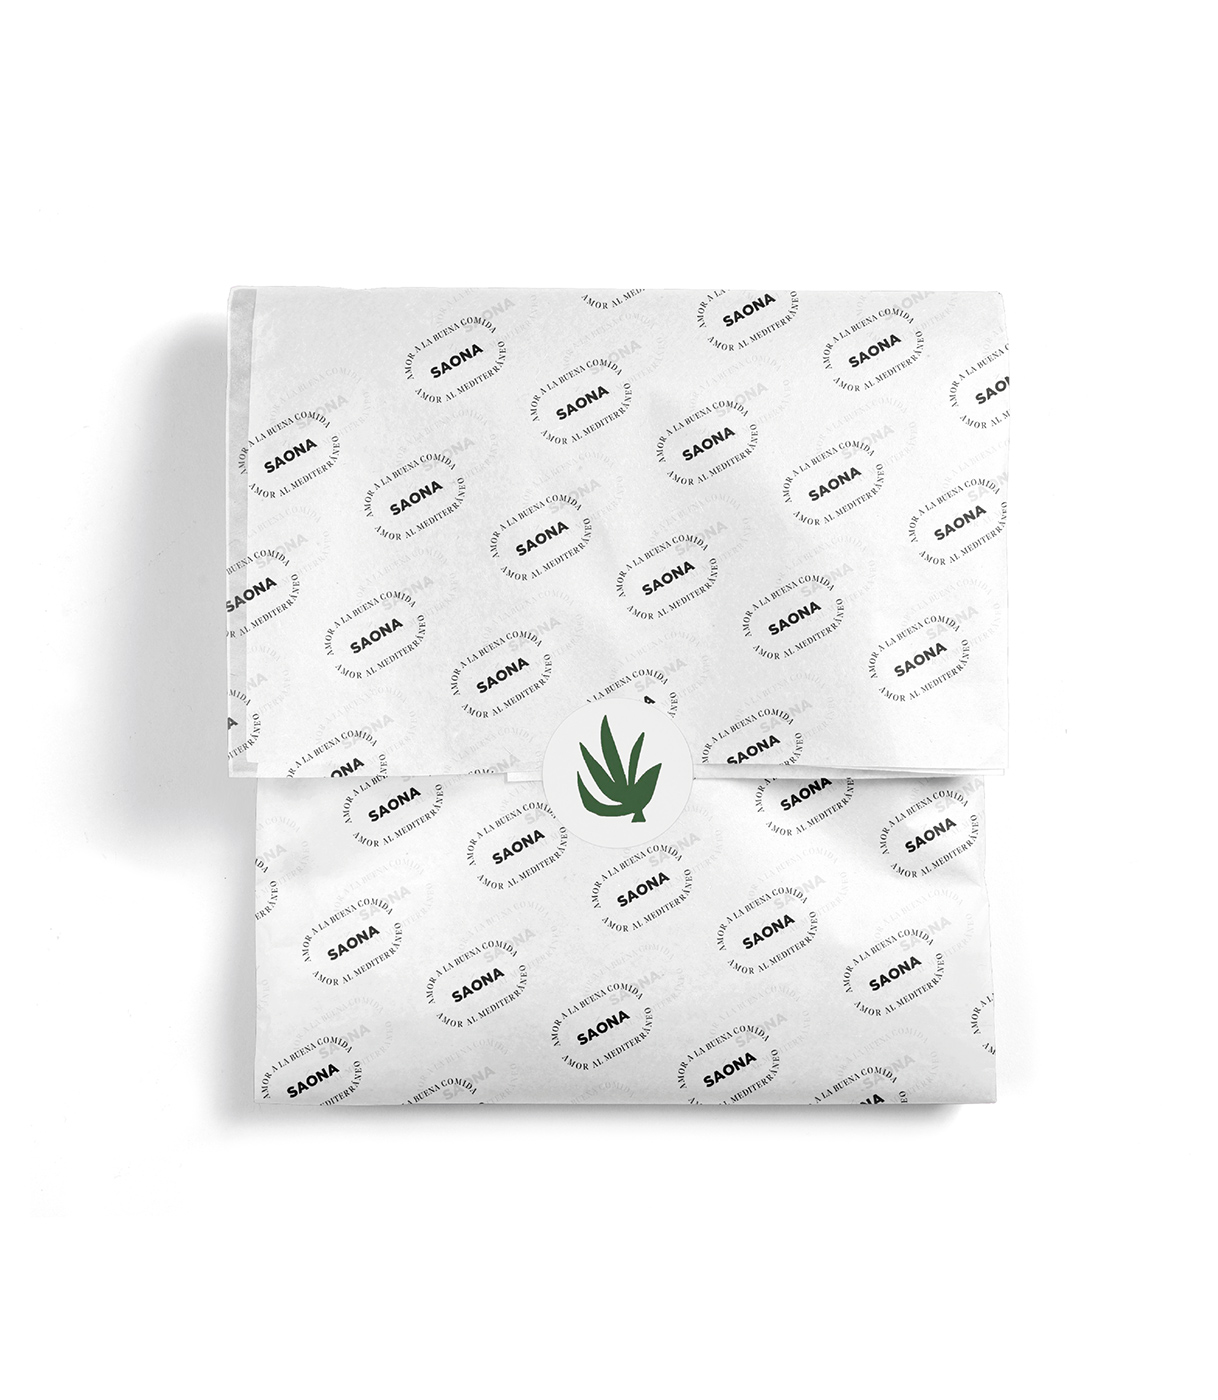 Diseño de bolsa de papel para Saona